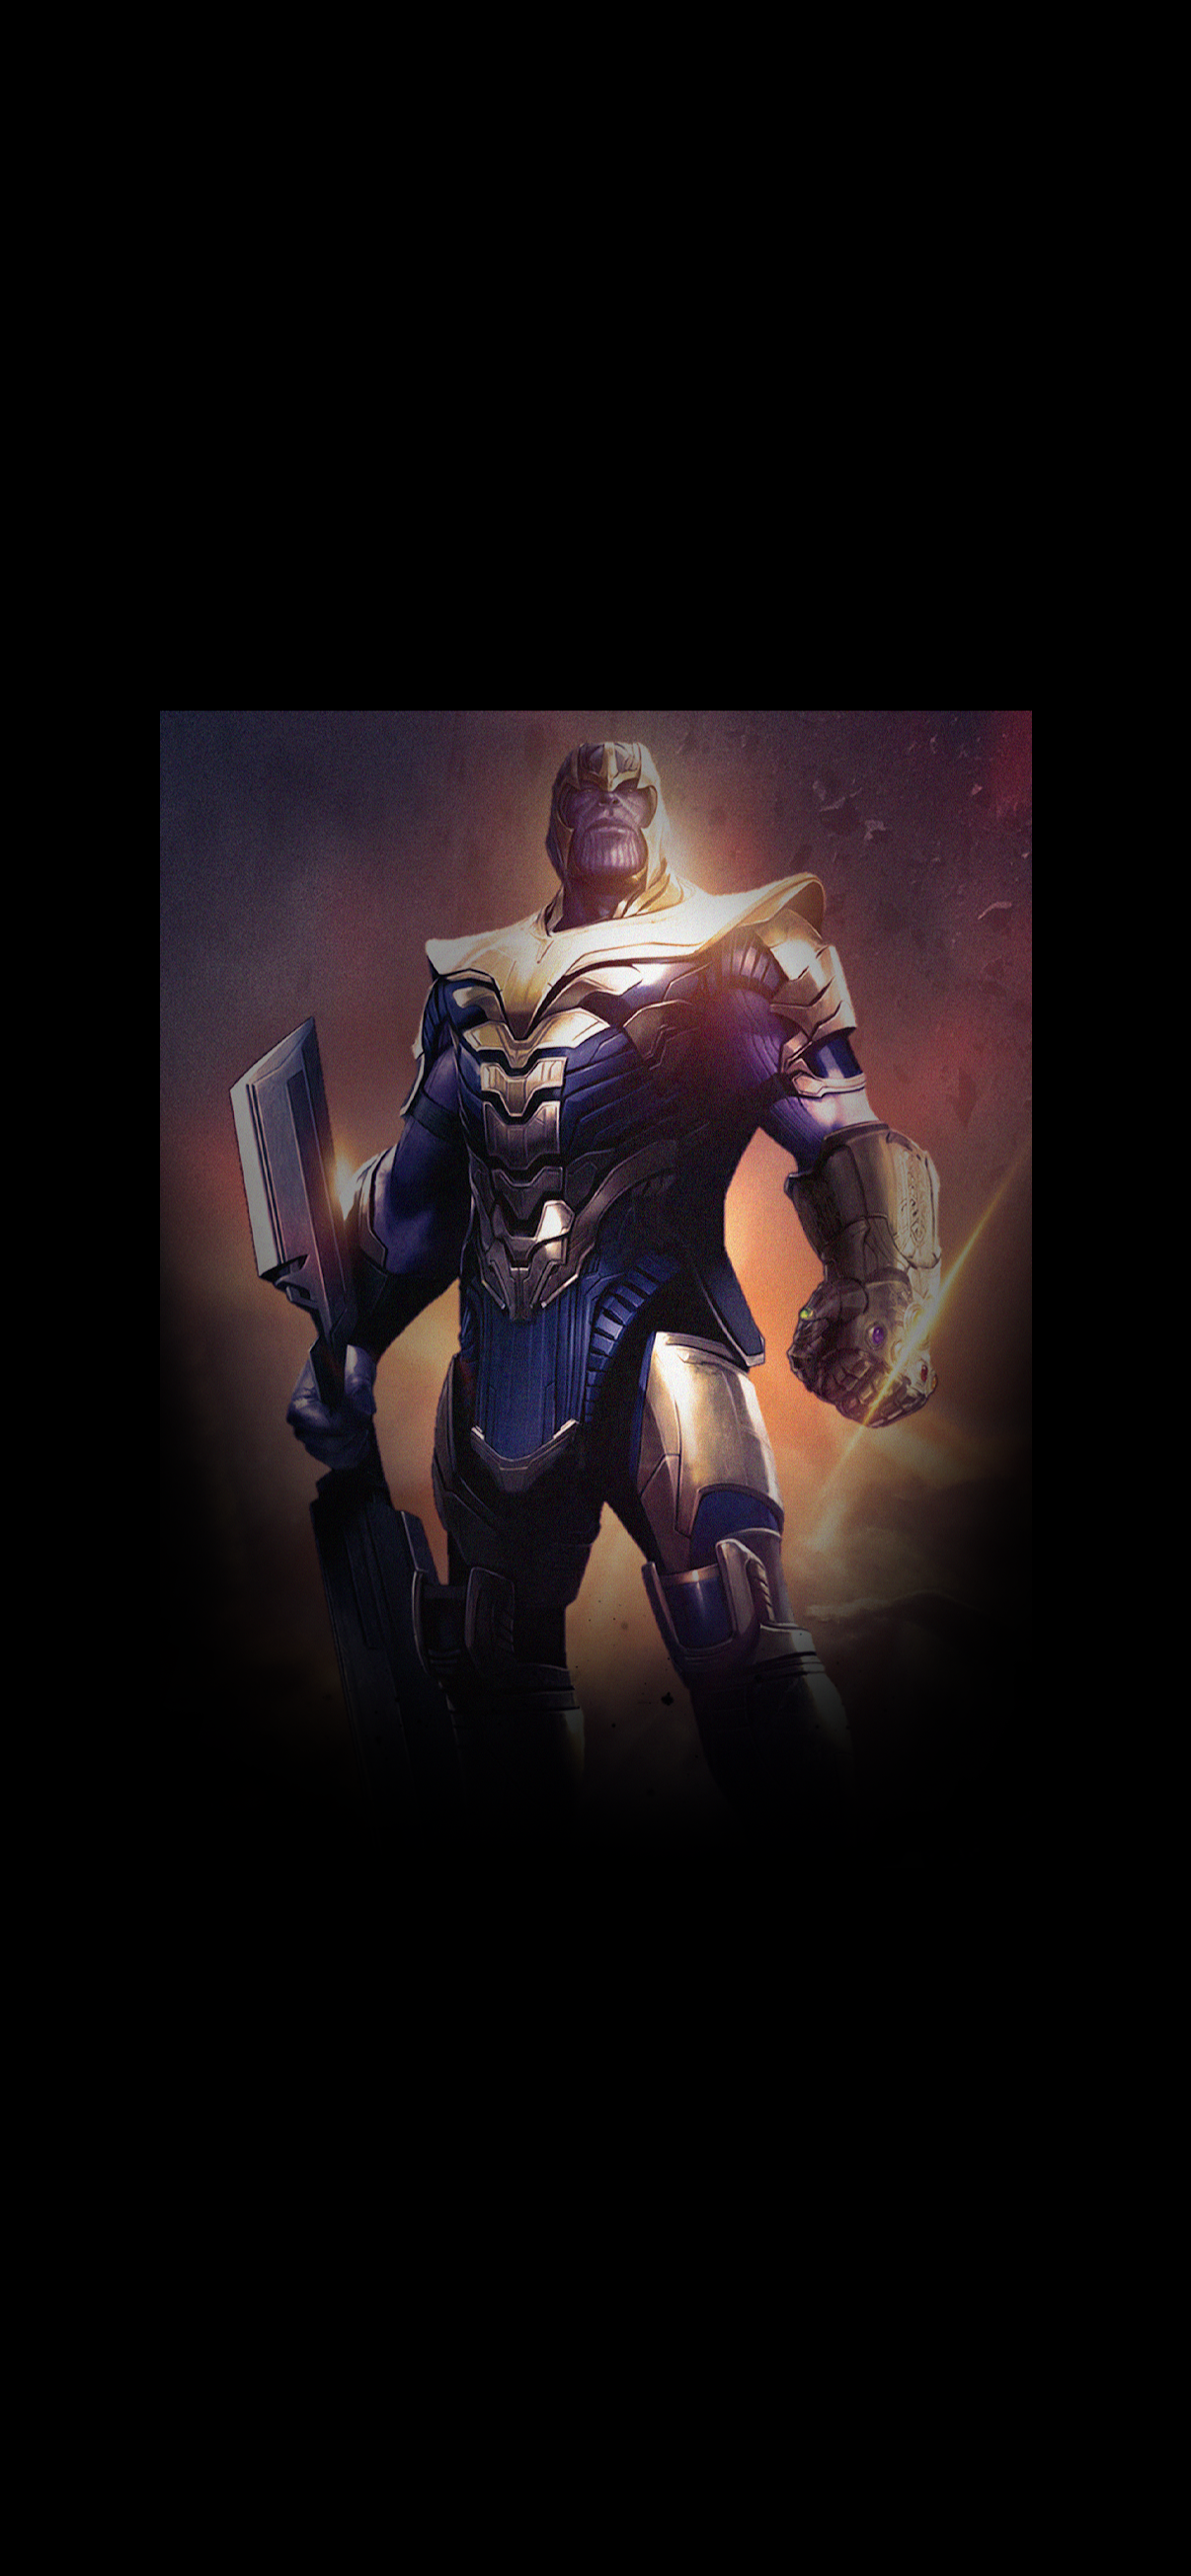 Thanos Endgame Minimalist Wallpapers